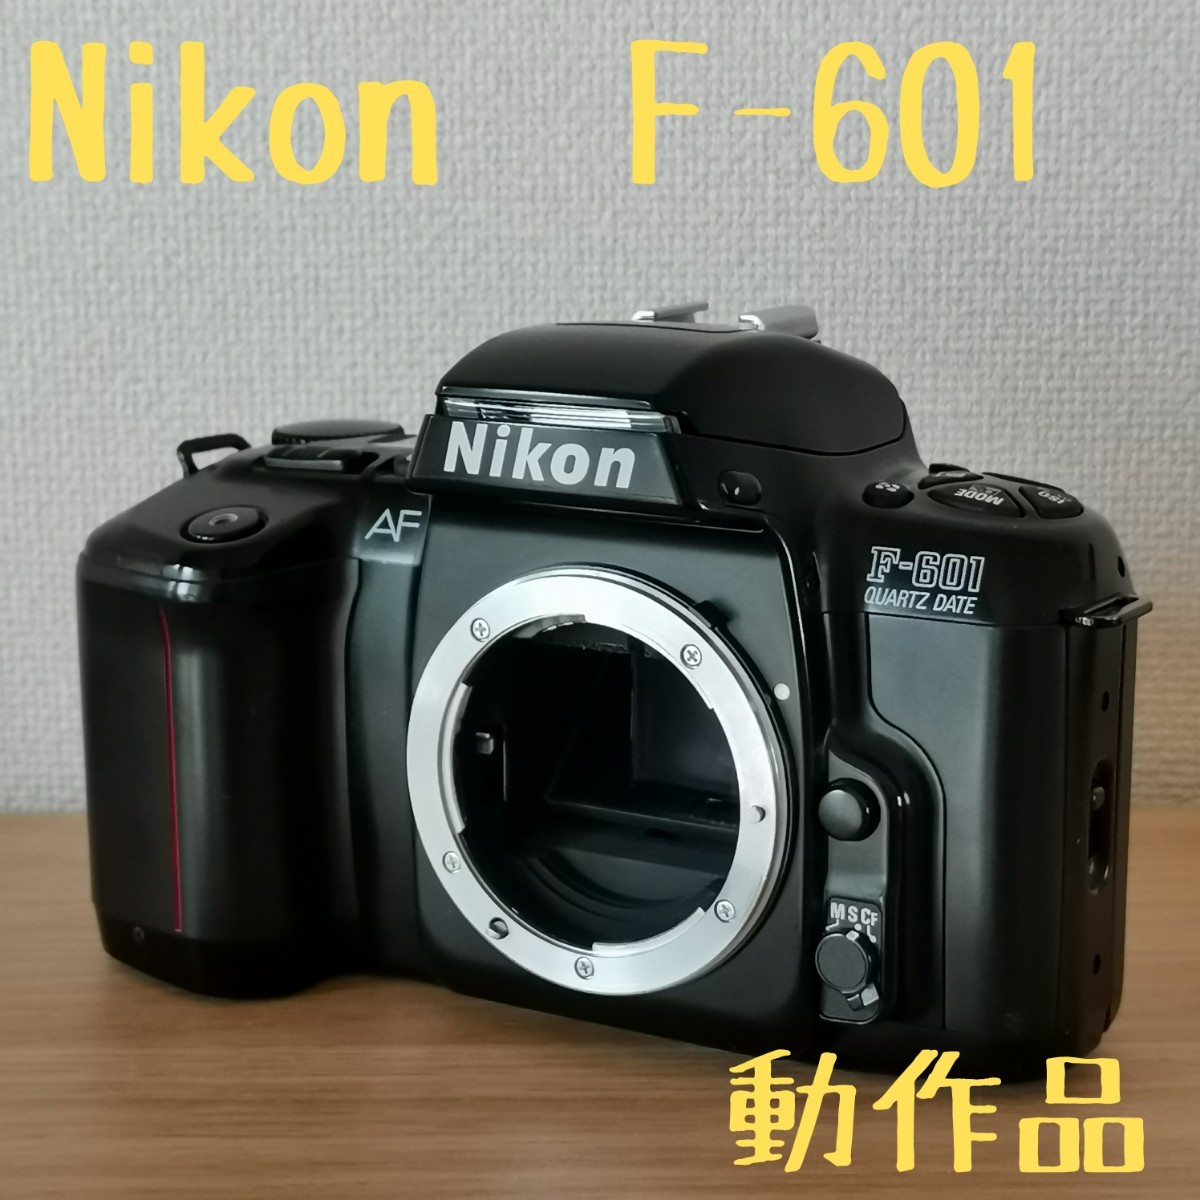 NIKON F601 本体 - デジタルカメラ